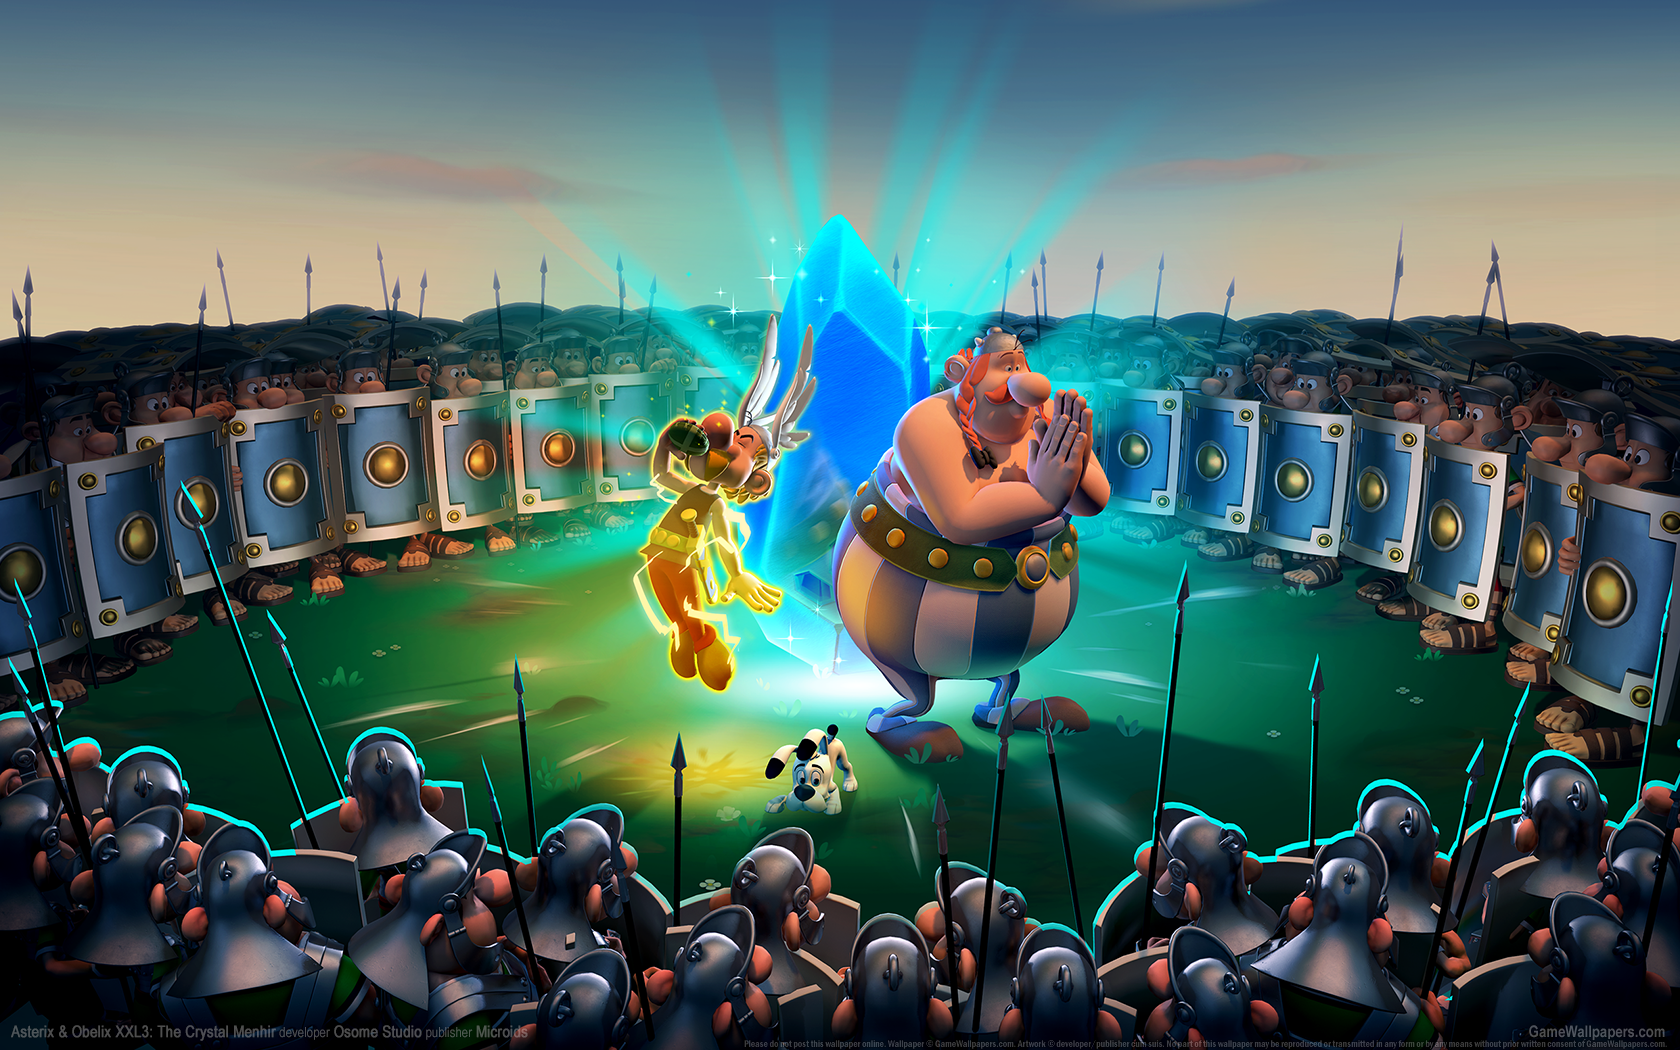 Asterix & Obelix XXL3: The Crystal Menhir 1680x1050 fond d'cran 01